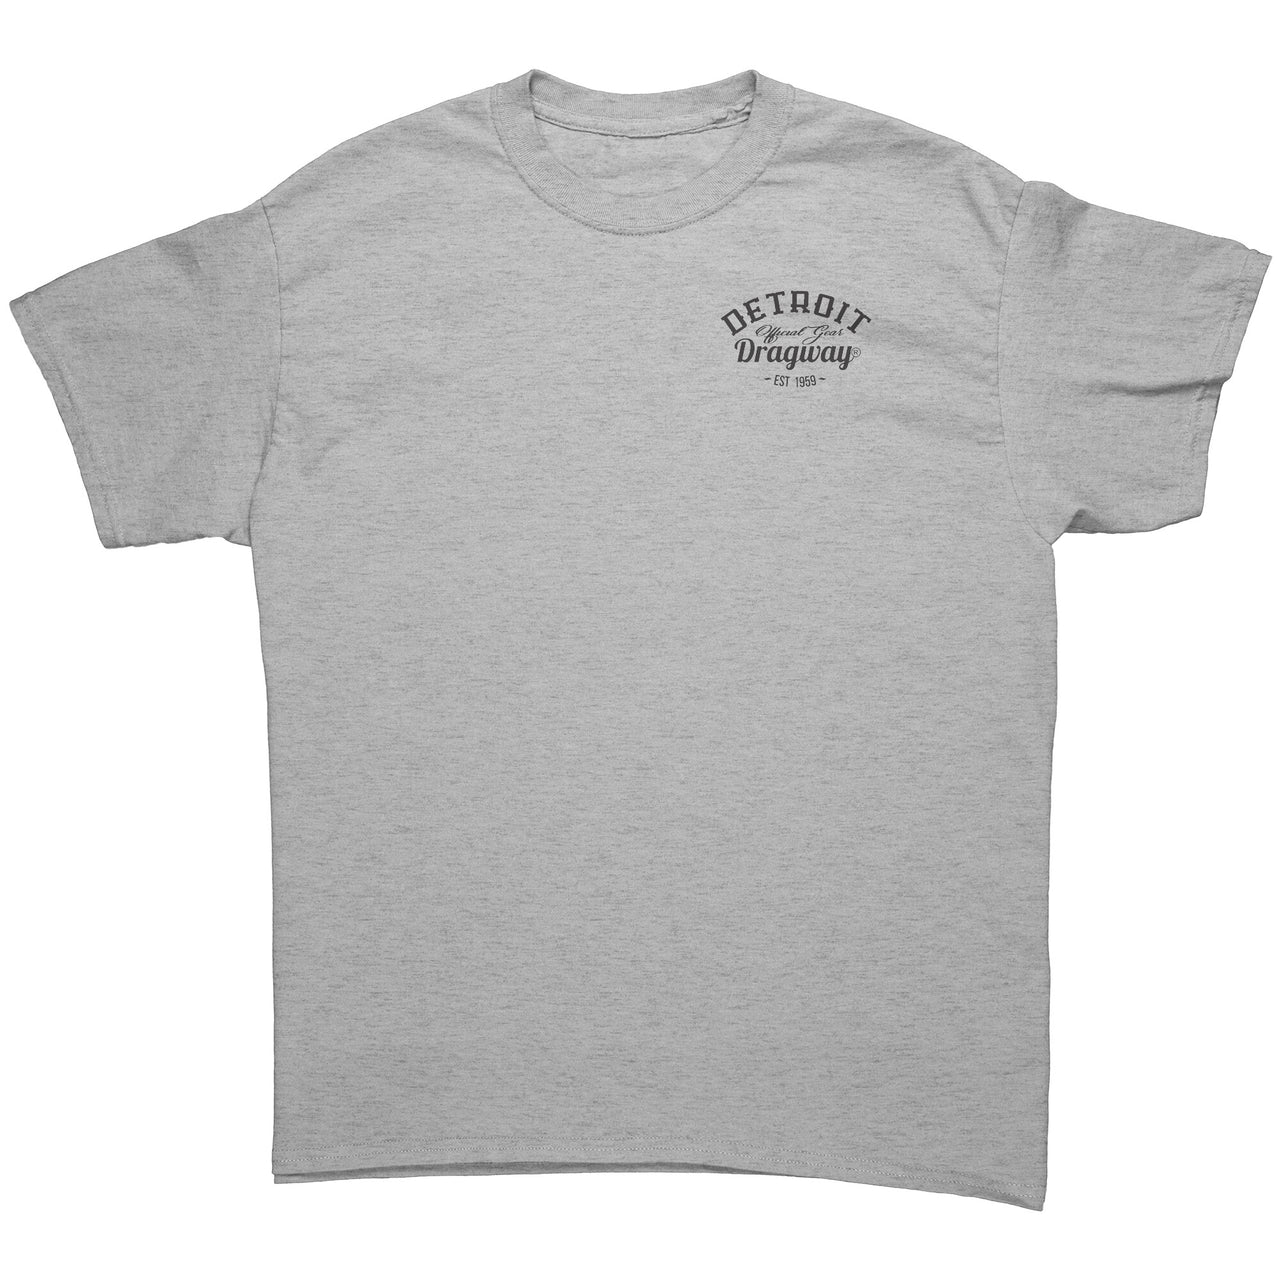 Detroit Dragway® SUNDAY,SUNDAY,SUNDAY Dragster Short Sleeve T-Shirt*